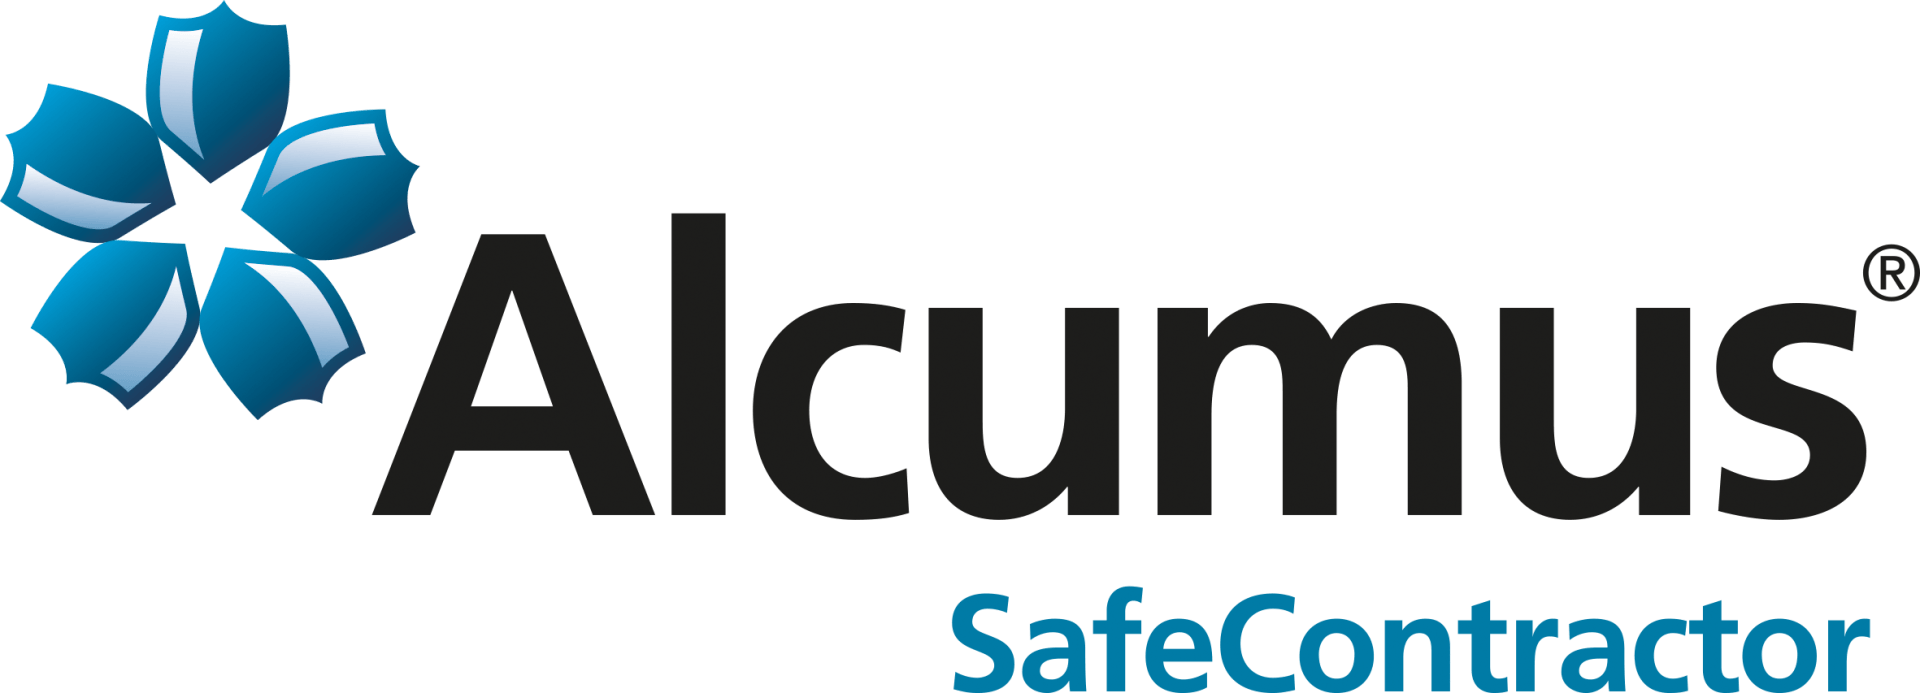 Alcumus Safe Gas Contractor